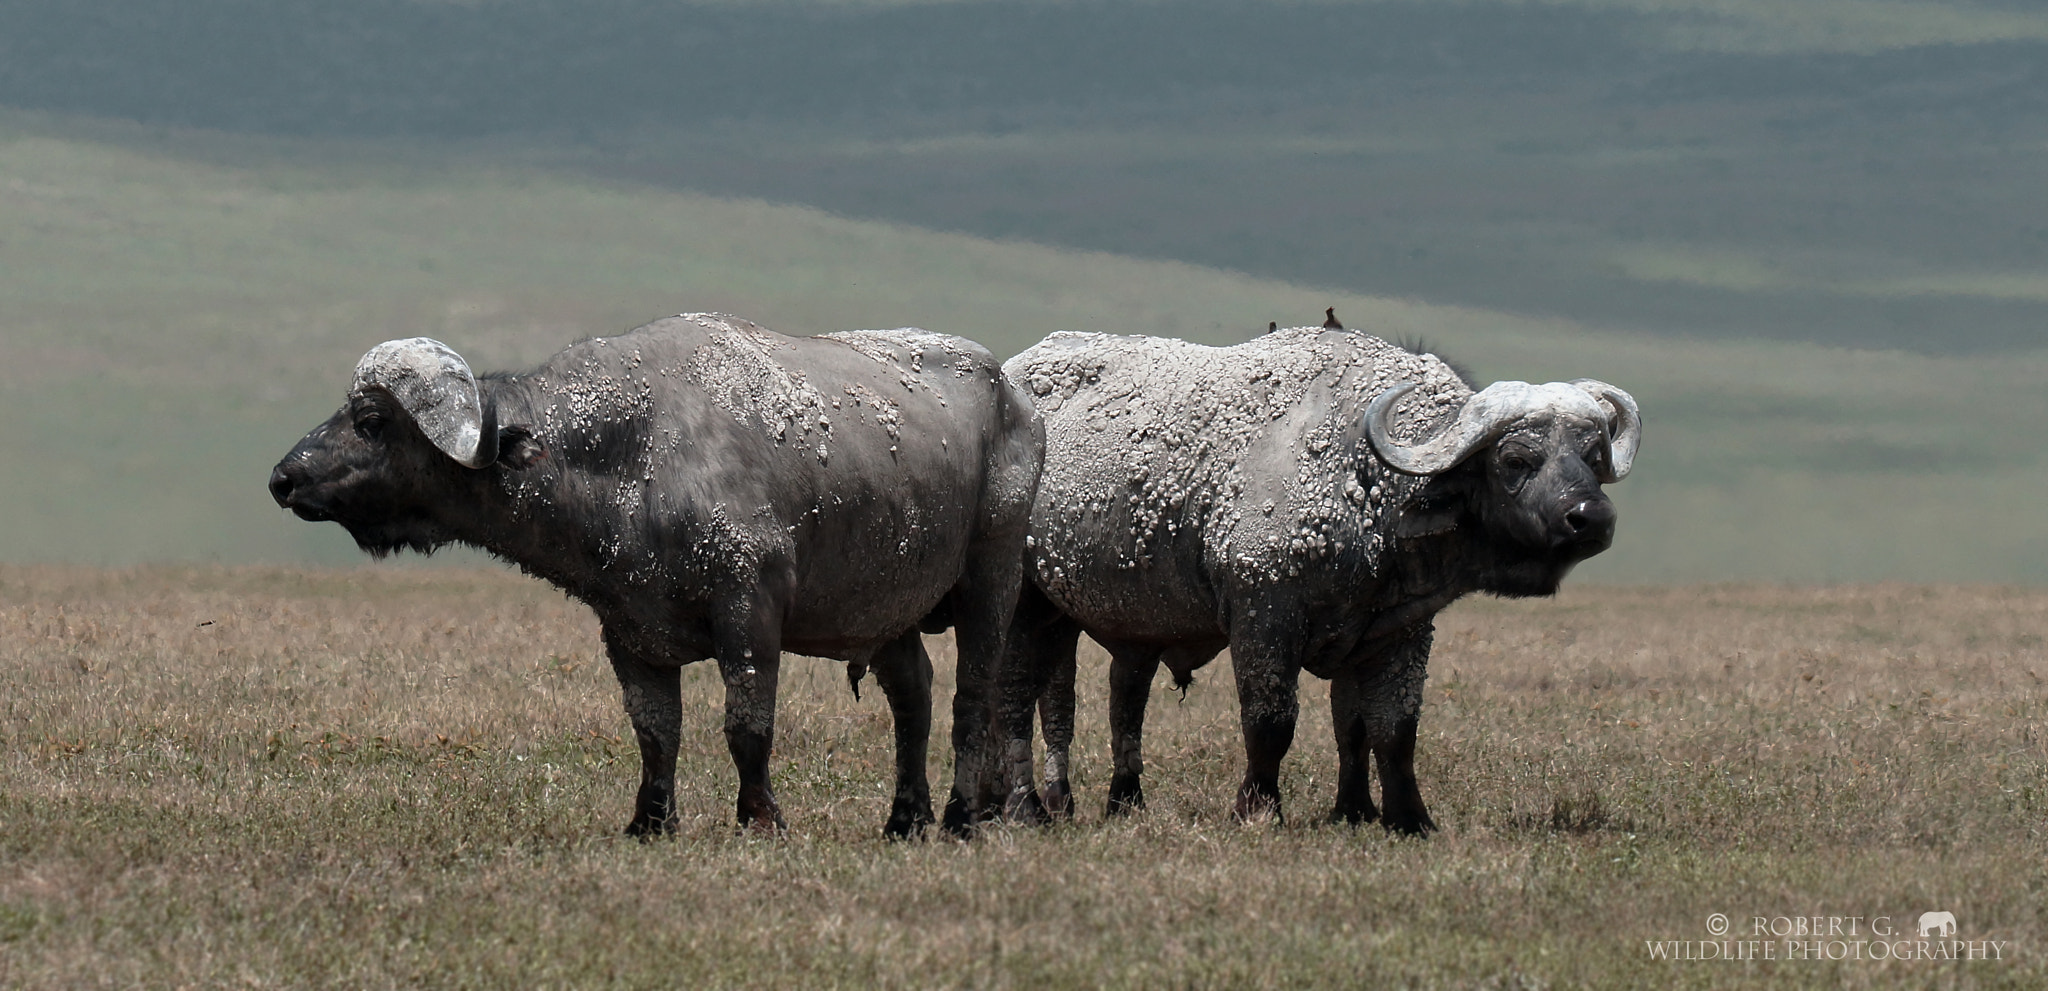 Sony SLT-A77 sample photo. White buffalo in ngorongoro photography